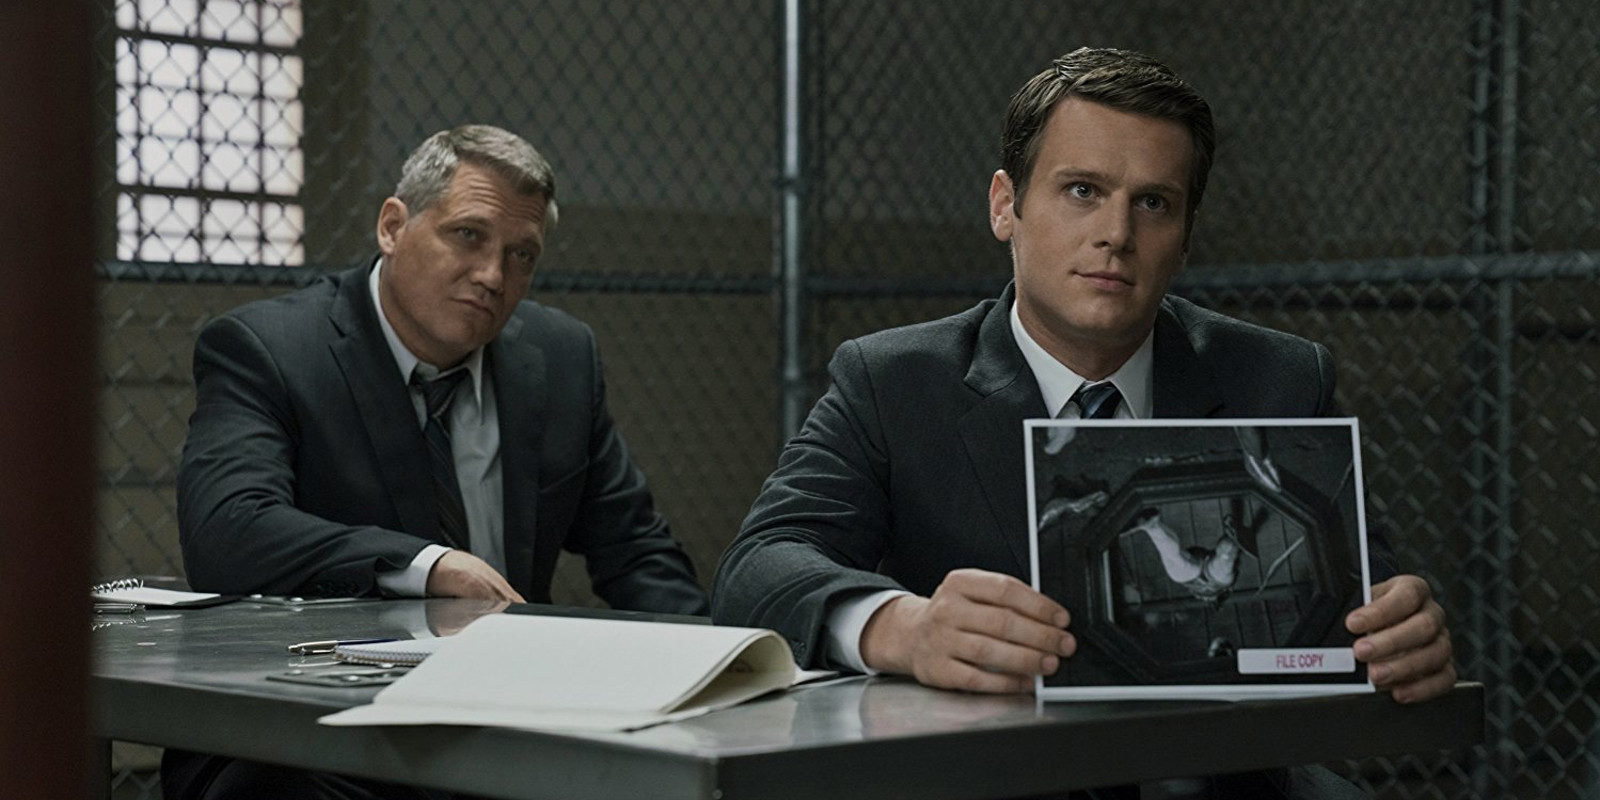 Crítica 'Mindhunter' de Netflix: Asesinos en serie más allá de 'Hannibal'